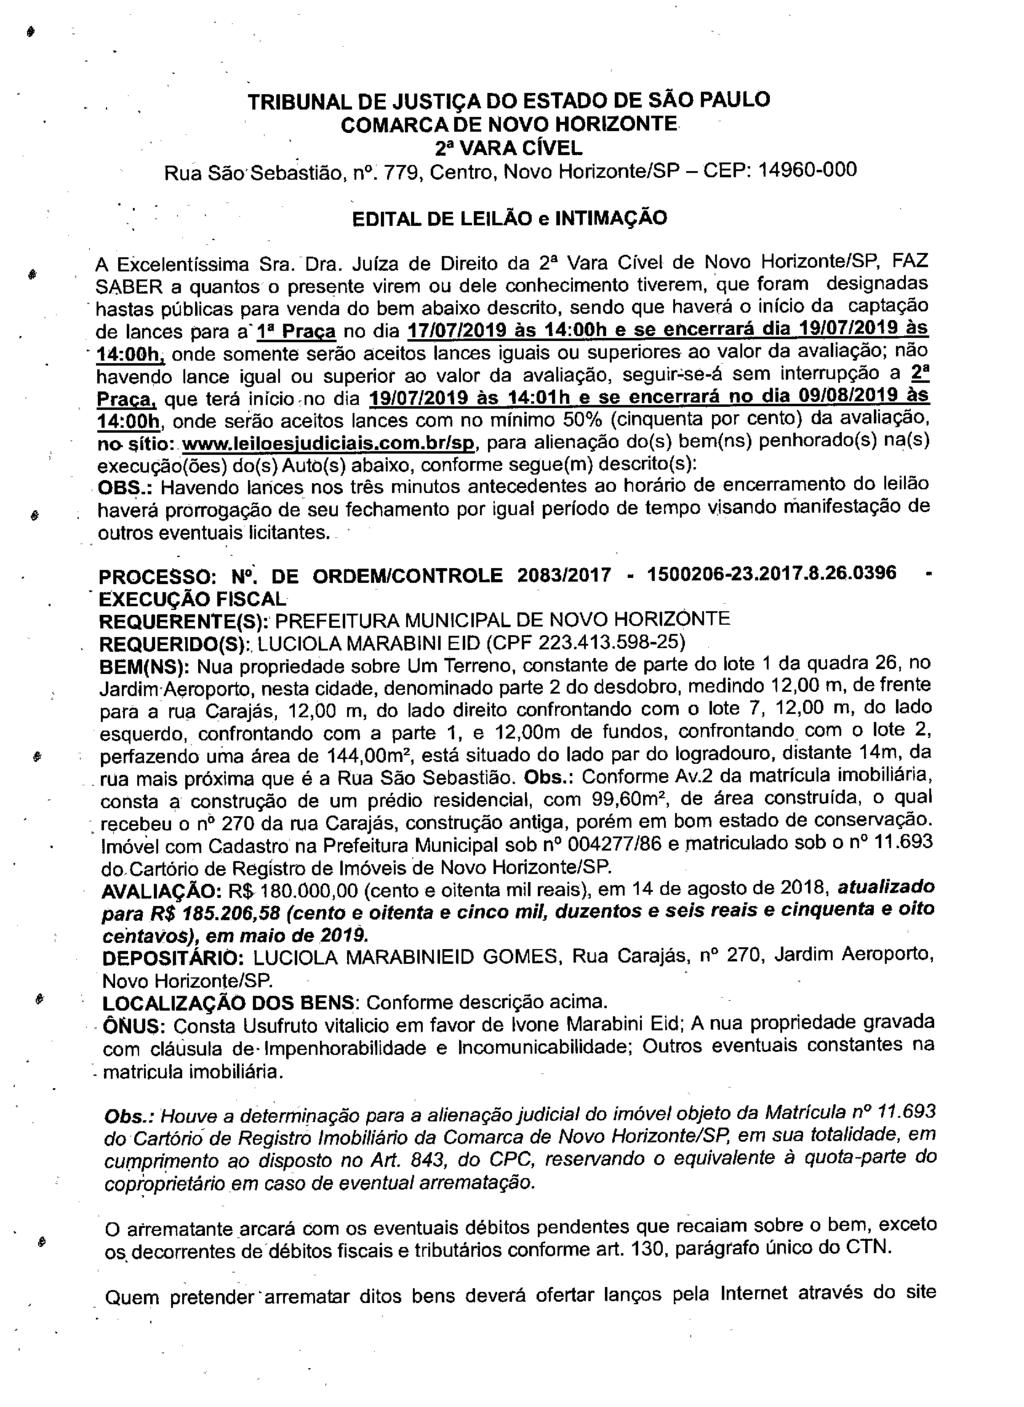 fls. 70 Este documento é cópia do original, assinado digitalmente por LUZIA REGIS DE OLIVEIRA DUARTE, liberado nos autos em 19/06/2019 às 13:09.